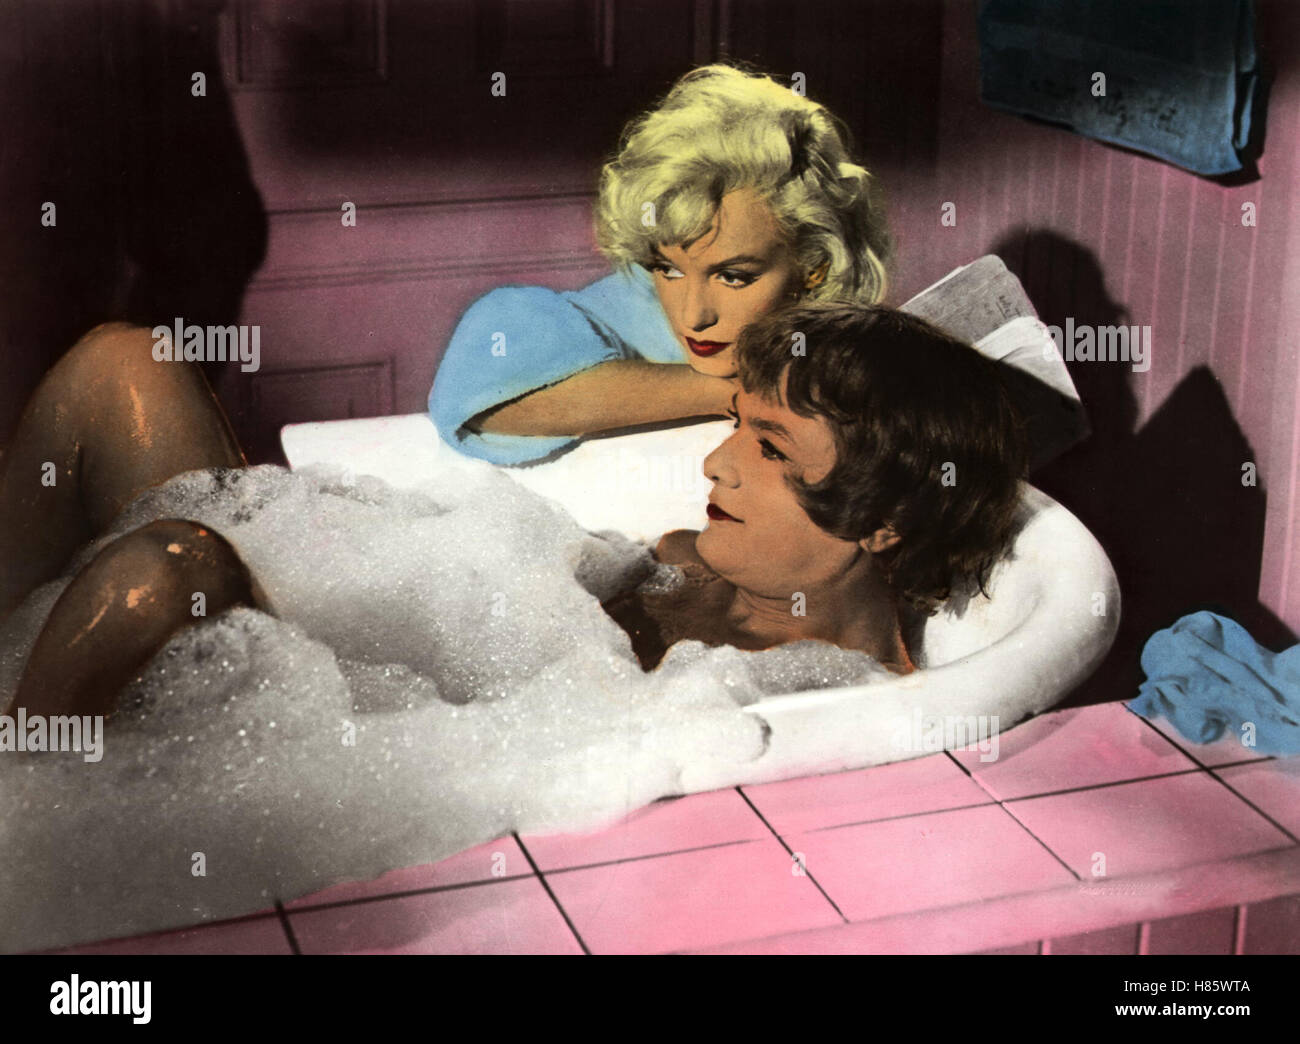 Manche mögen's heiß, (A QUALCUNO PIACE CALDO) USA 1959, Regie: Billy Wilder, MARILYN MONROE + JACK LEMMON Stichwort: Badewanne, Schaum Foto Stock